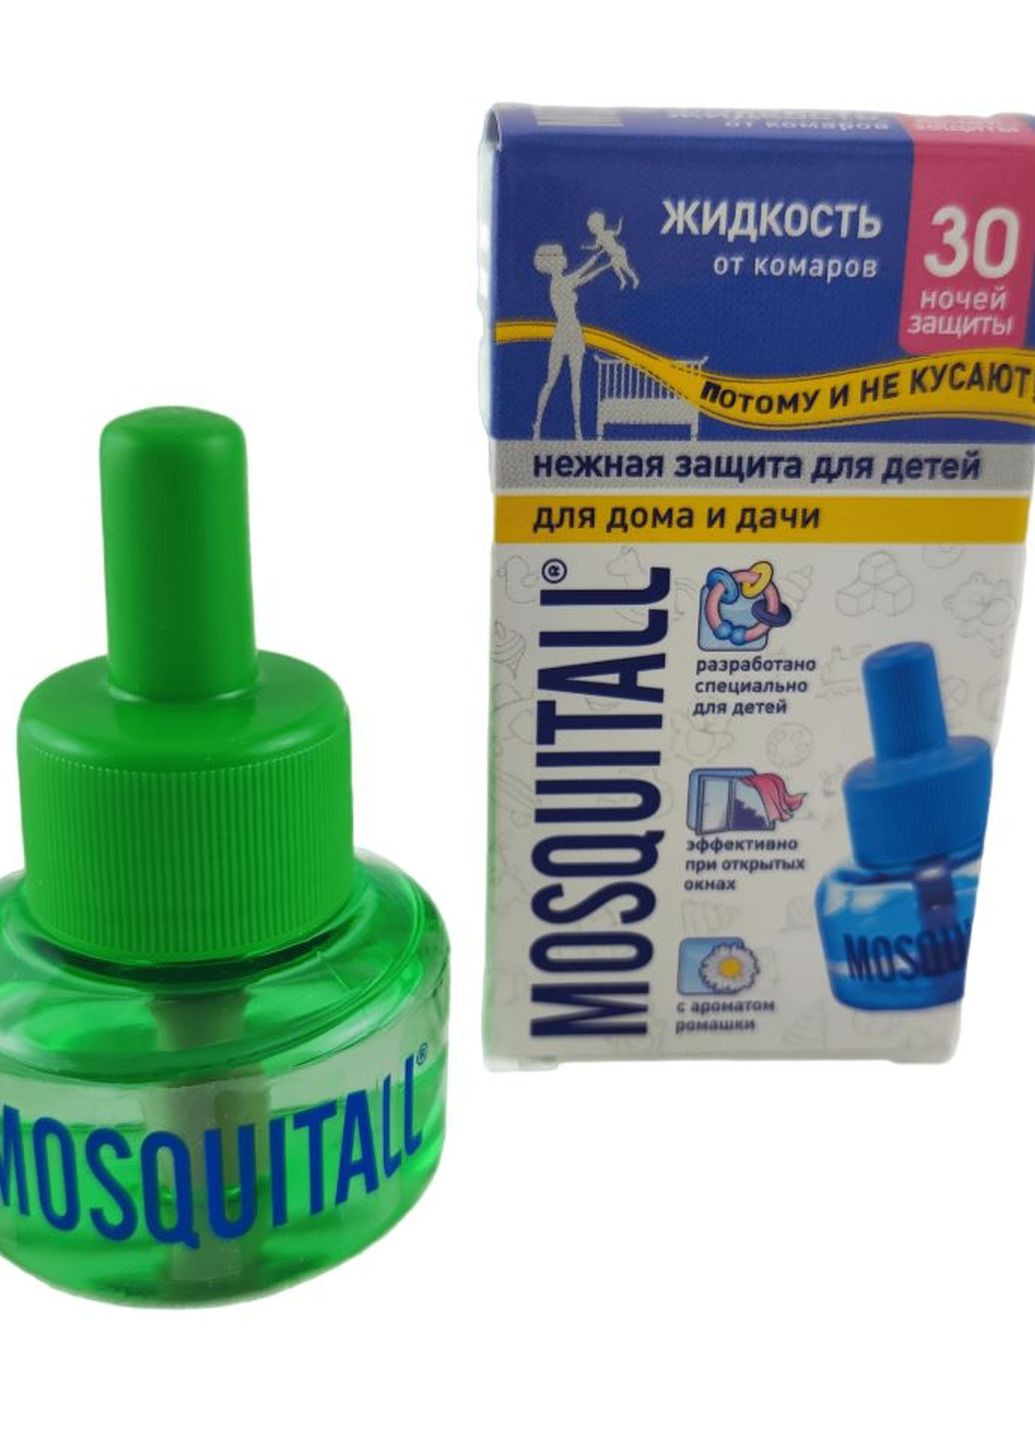 Жидкость от комаров Нежная защита для детей на 30 ночей, 30мл (000024) Mosquitall (260495605)